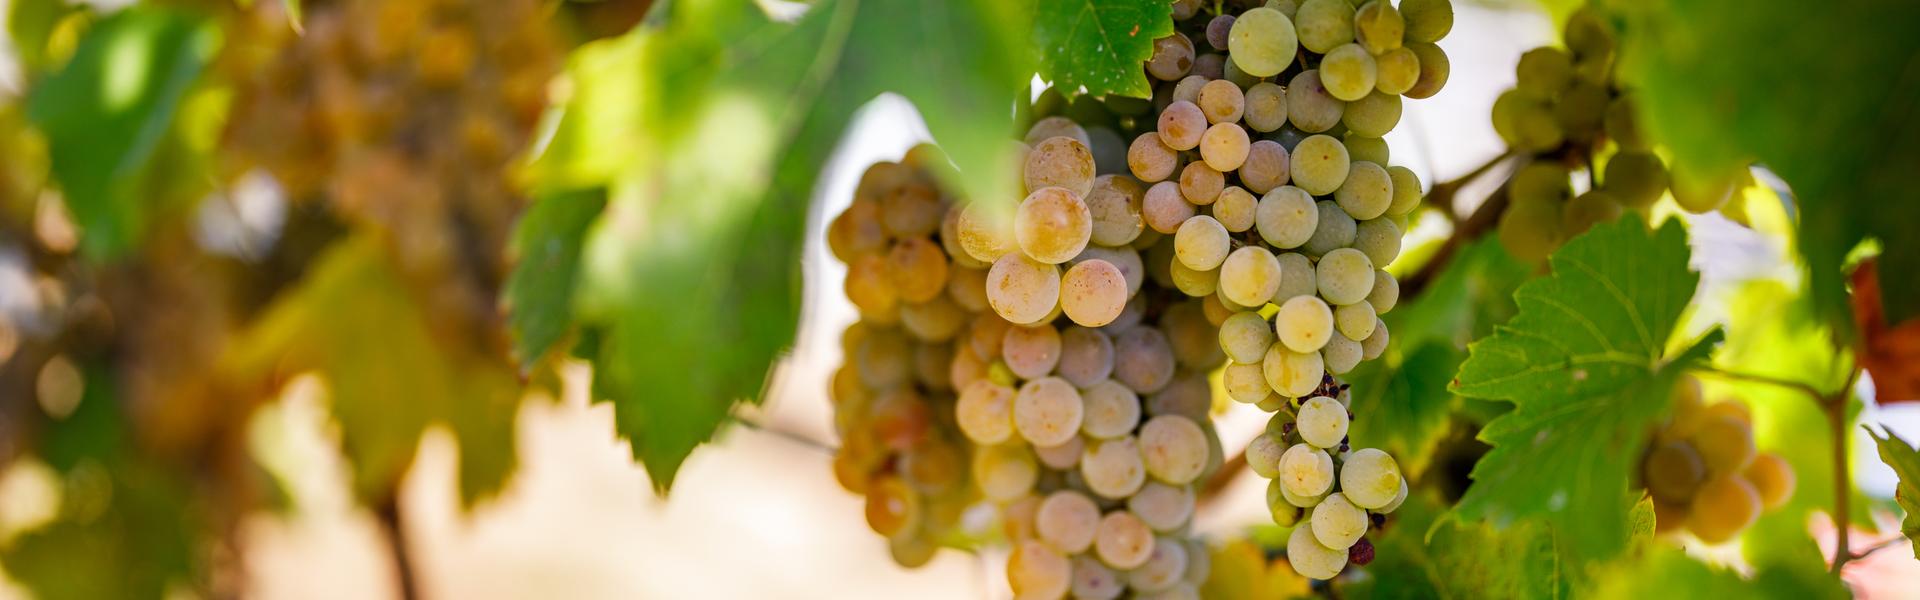 Zdjęcie ukazujące kiść winogron białych, rosnących na krzewie winorośli.